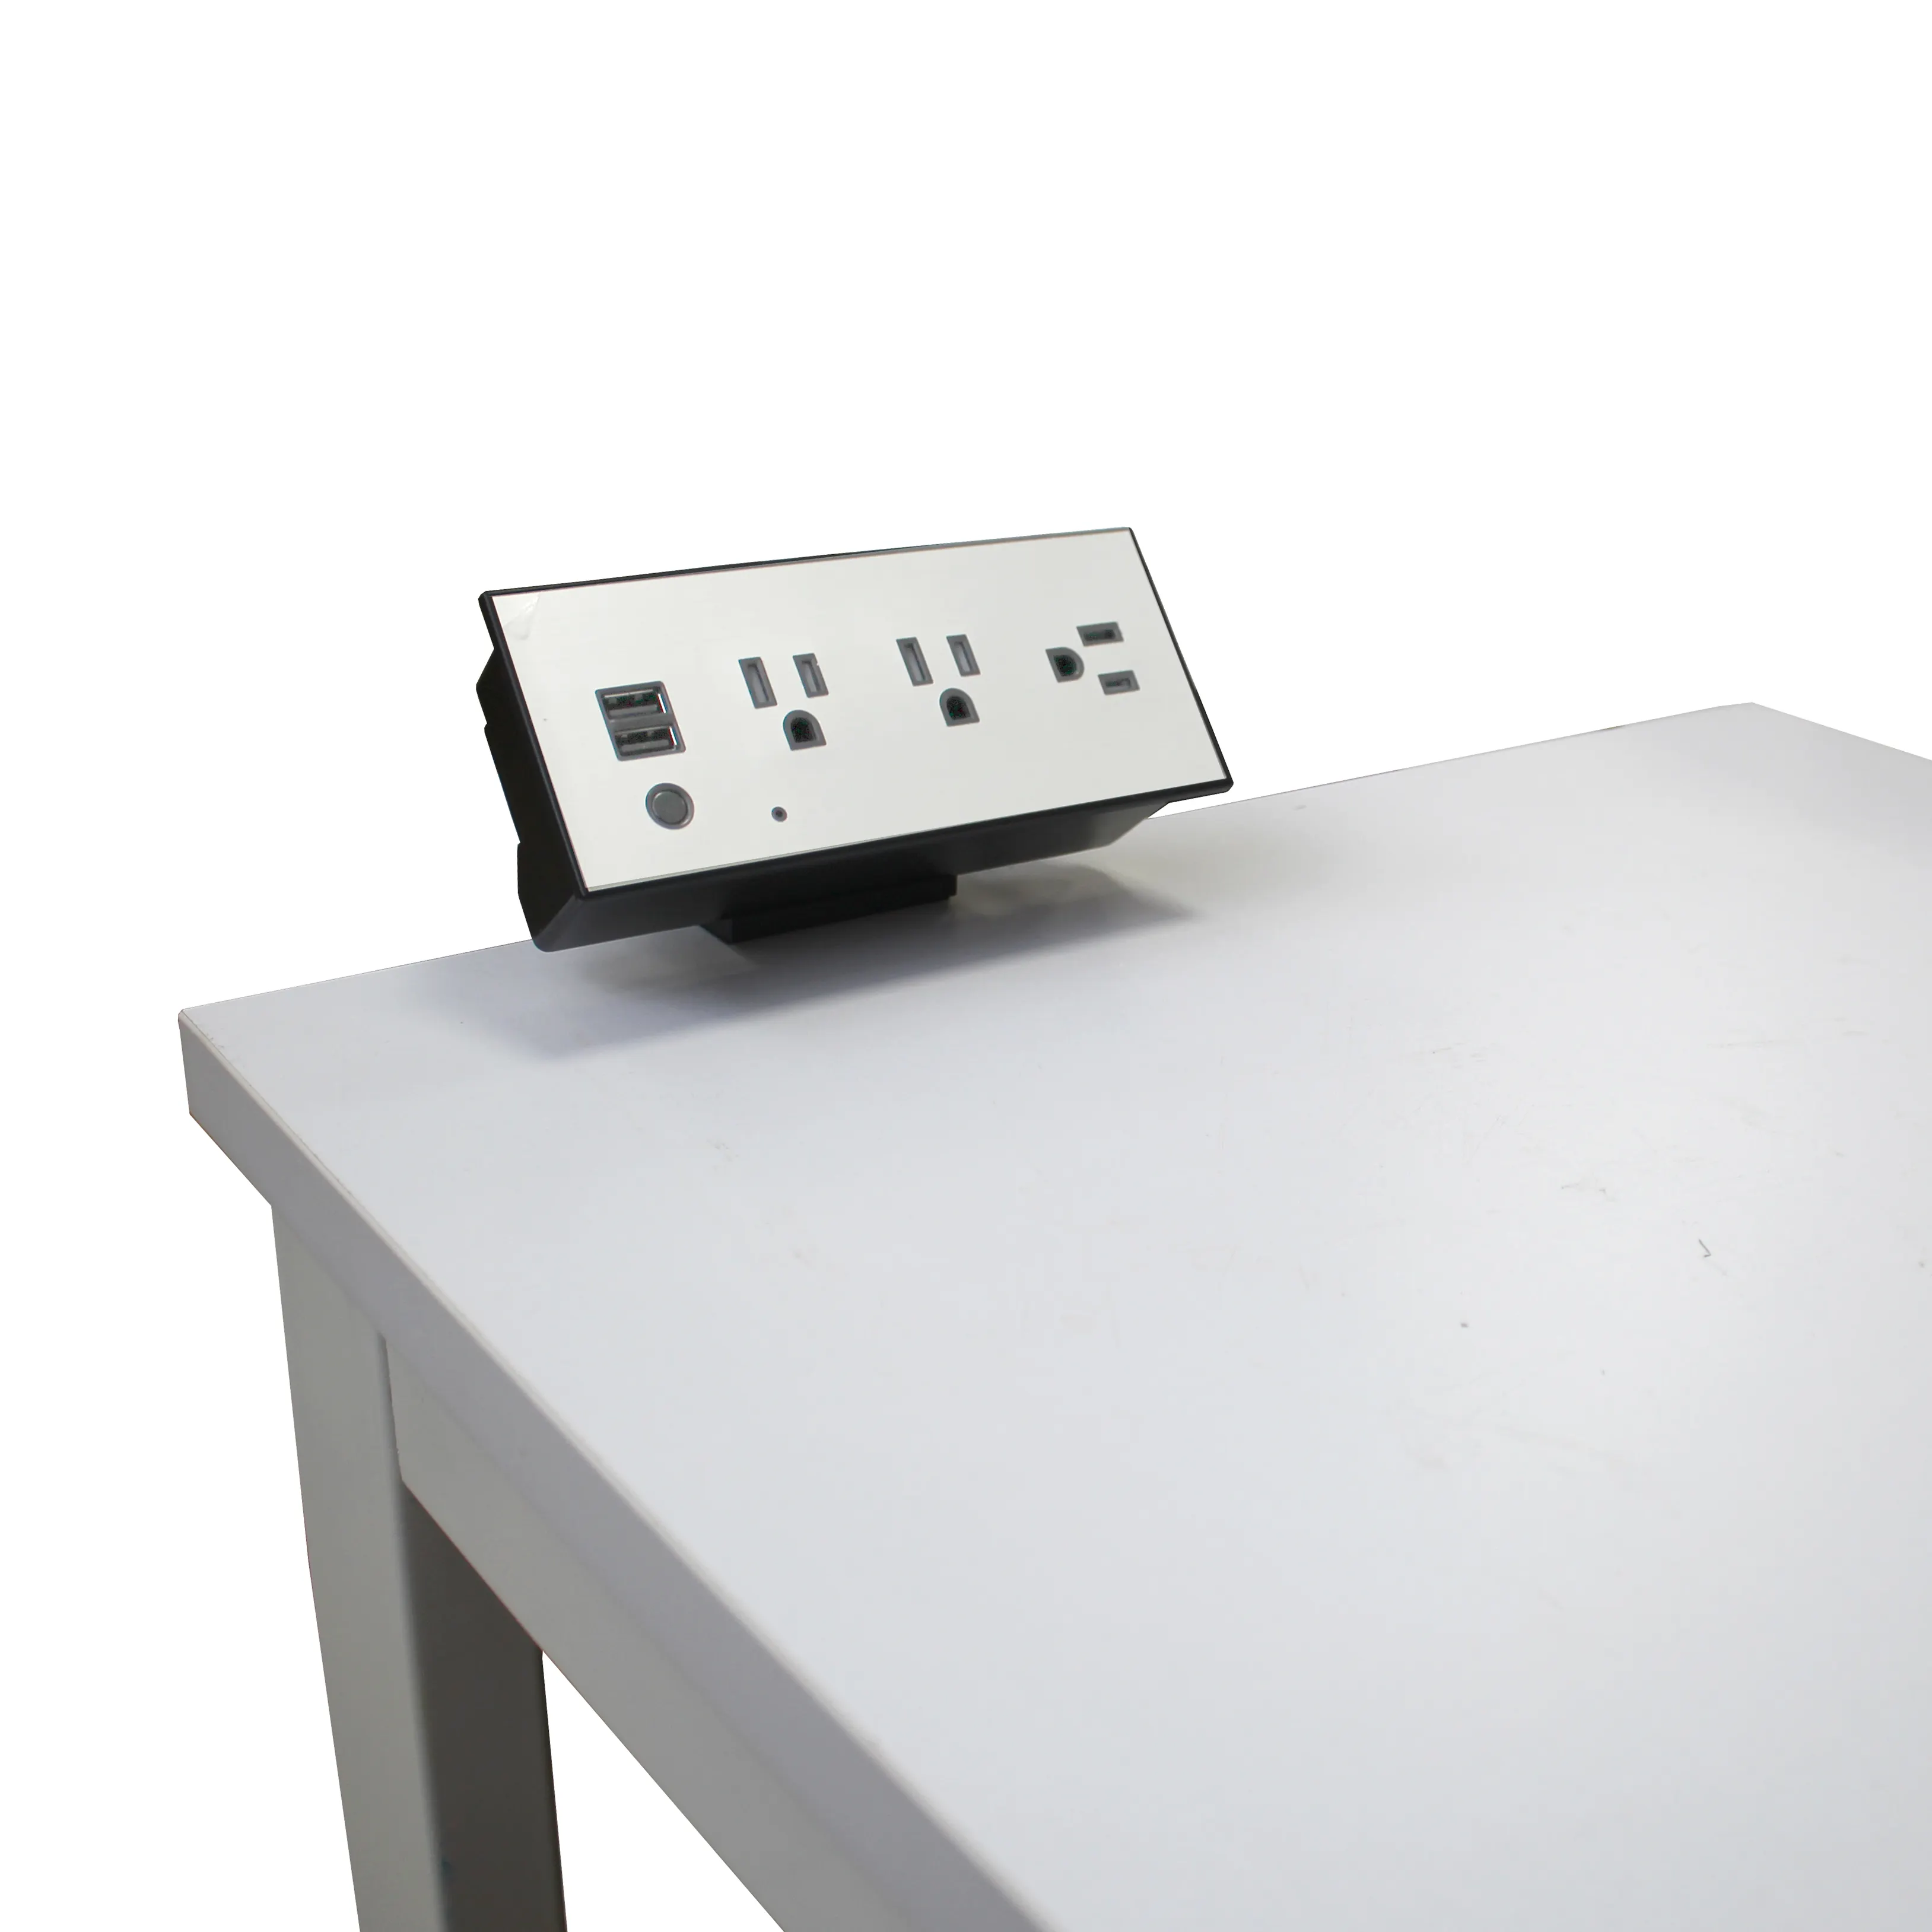 हमें टेबल साइड दबाना पर सॉकेट में tabletop डेस्कटॉप पावर सॉकेट चार्जर विस्तार कनाडा में ईटीएल क्लिप स्कूल तालिका का उपयोग